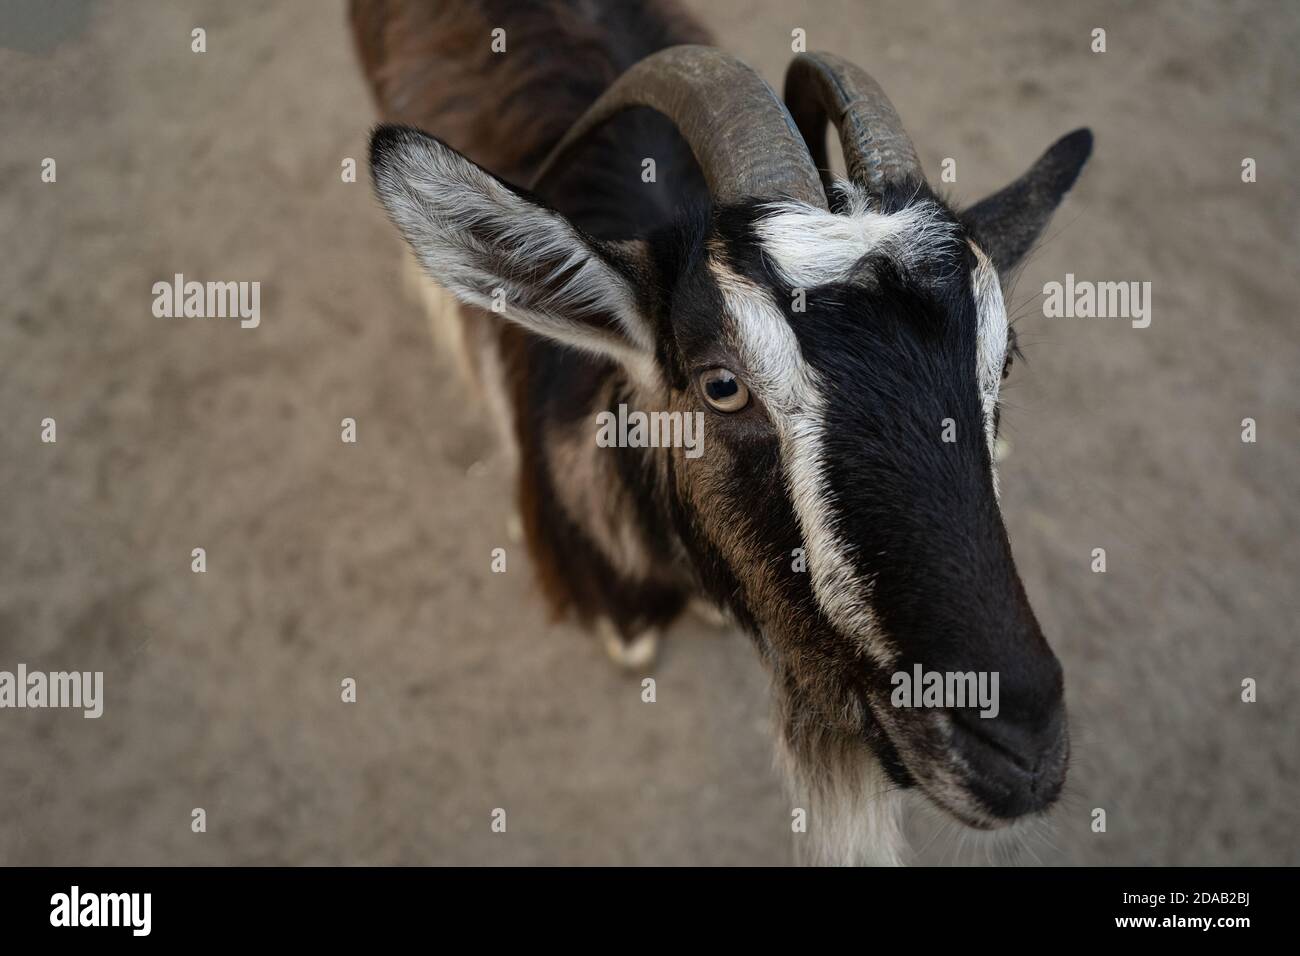 Eine Ziege schaut in die Kamera und bettelt um Nahrung. Schwarz-weißes Säugetier. Porträt eines Tieres. Nahaufnahme. Draufsicht Stockfoto